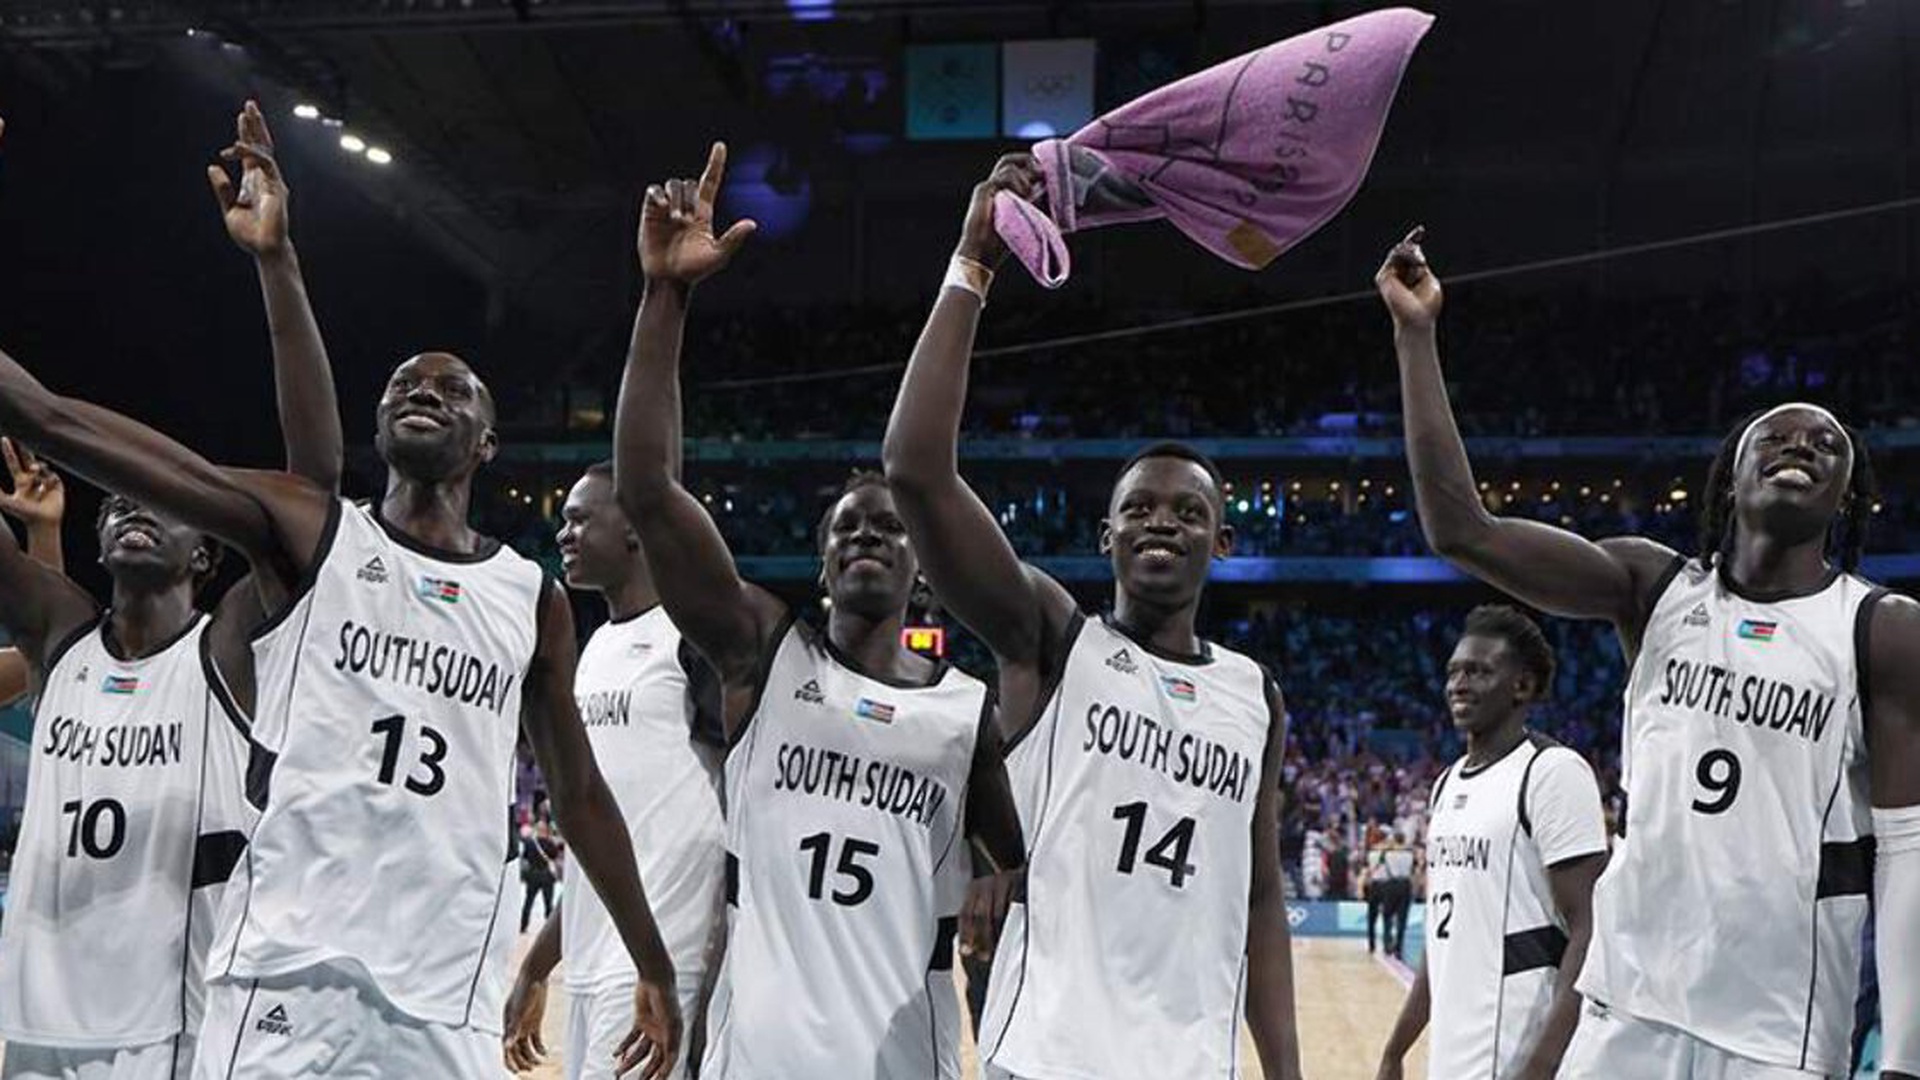 Оргкомитет Олимпиады в Париже извинился за ошибку с гимном Южного Судана